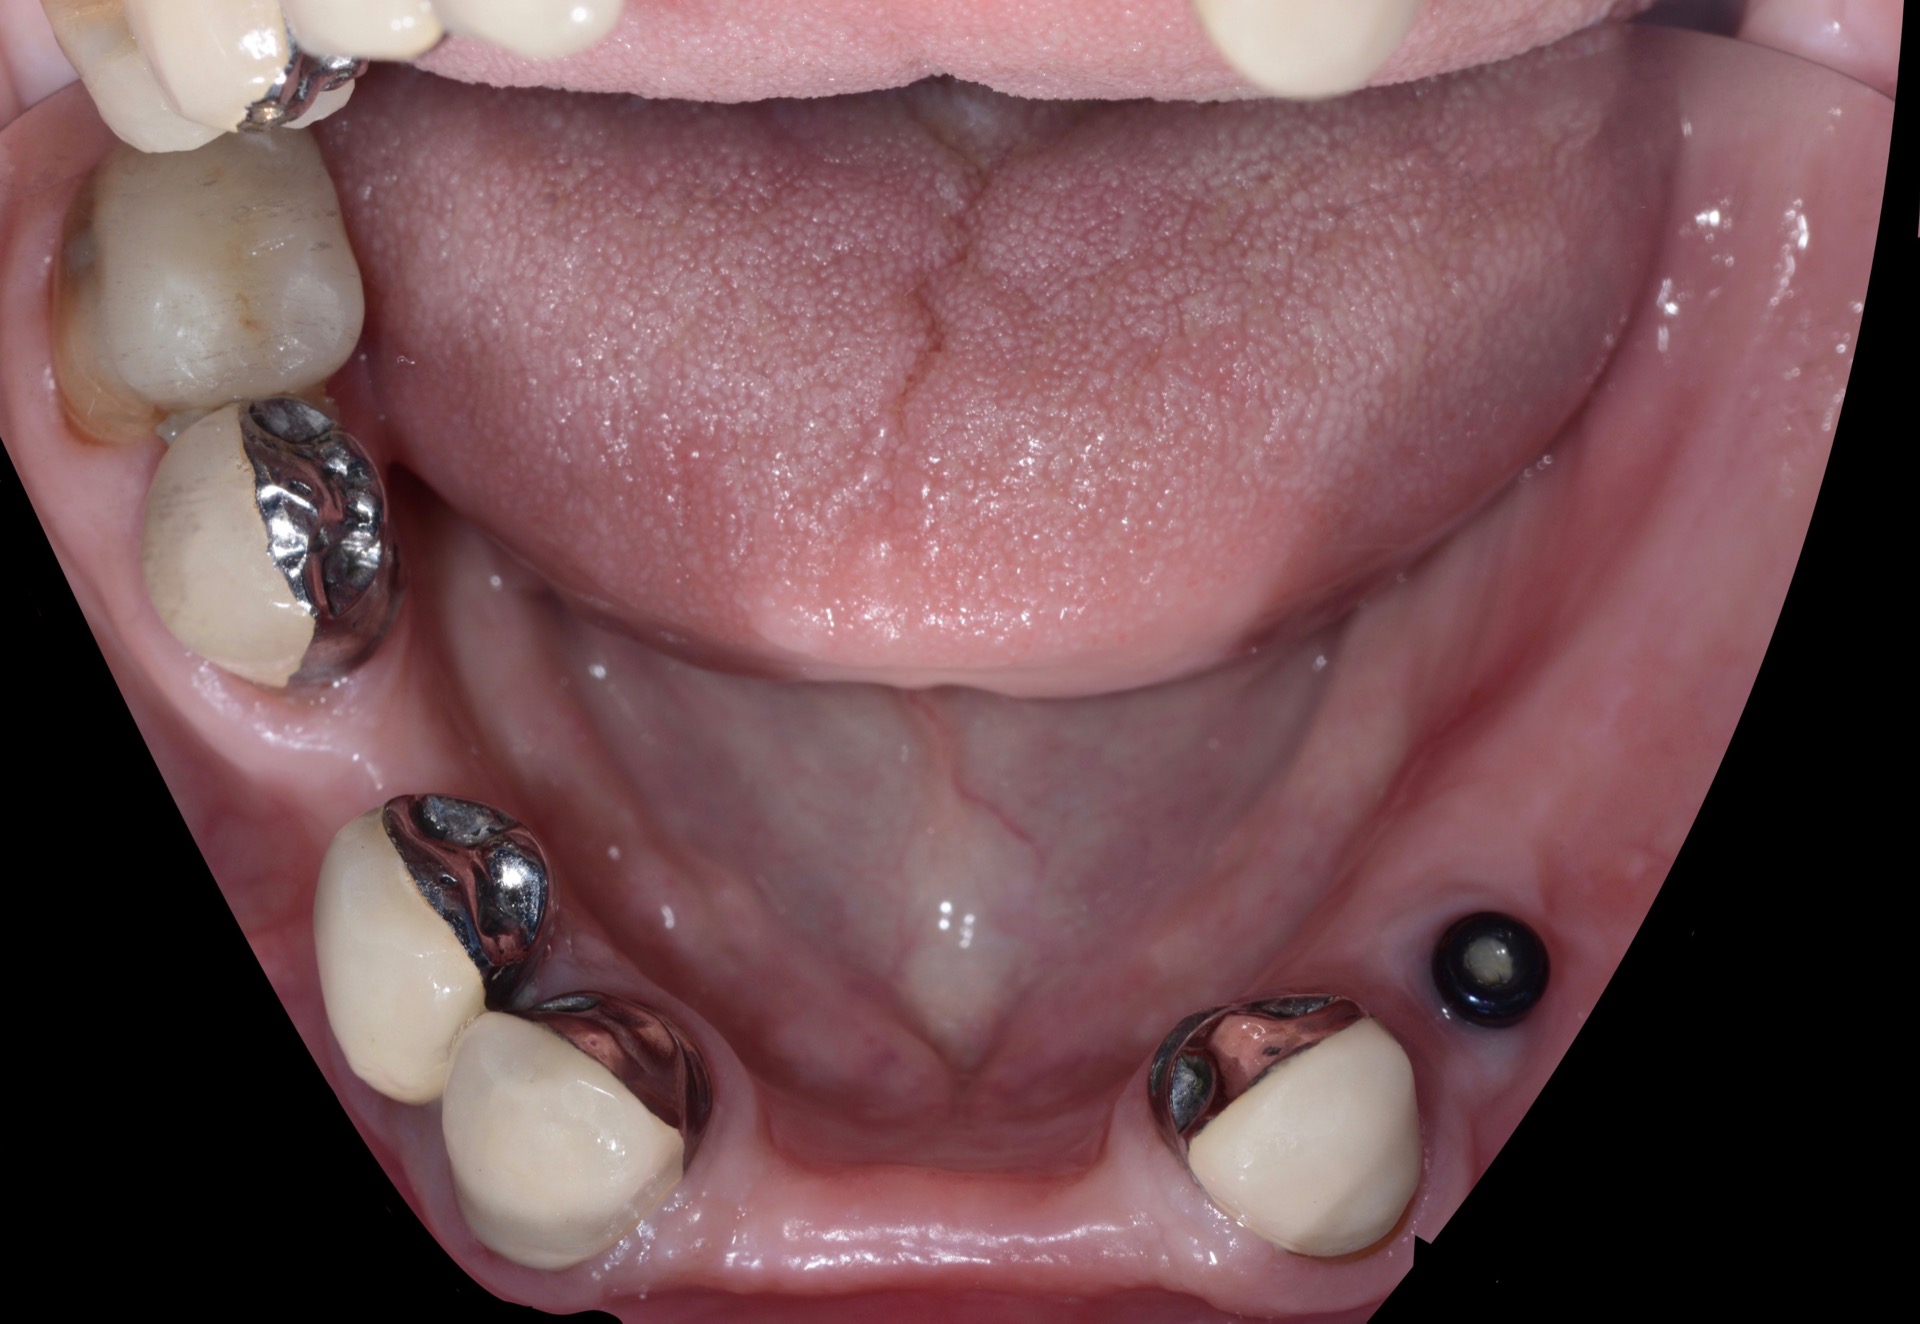 Τελική κατάσταση - Μασητική άποψη κάτω γνάθου (χωρίς την μερική οδοντοστοιχία τοποθετημένη 